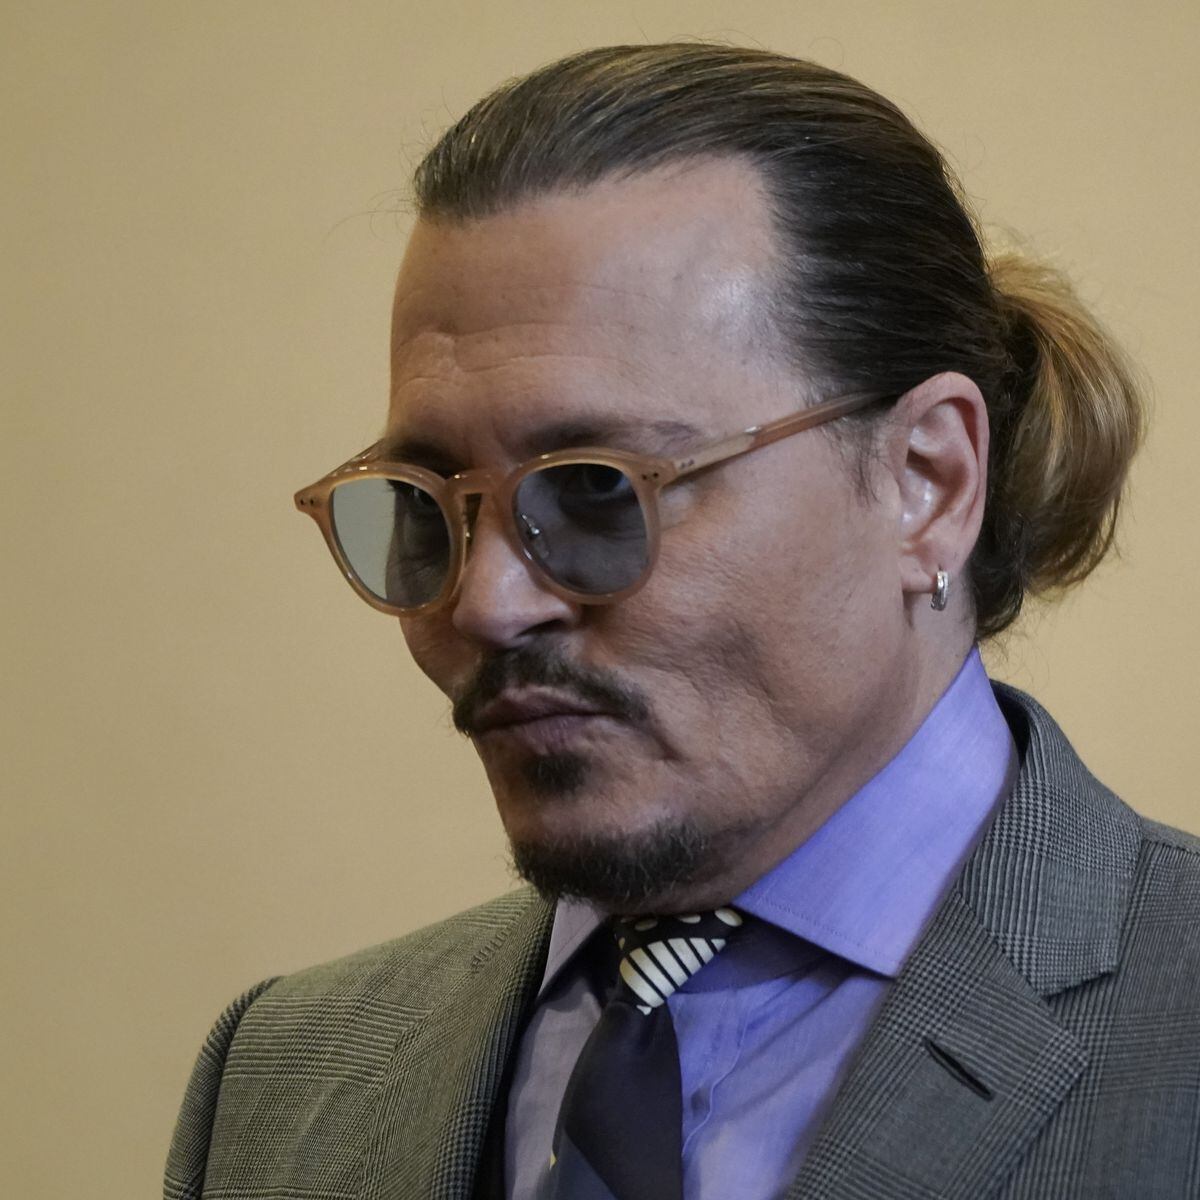 Filme sobre Johnny Depp e Amber Heard ganha trailer; assista - Estadão